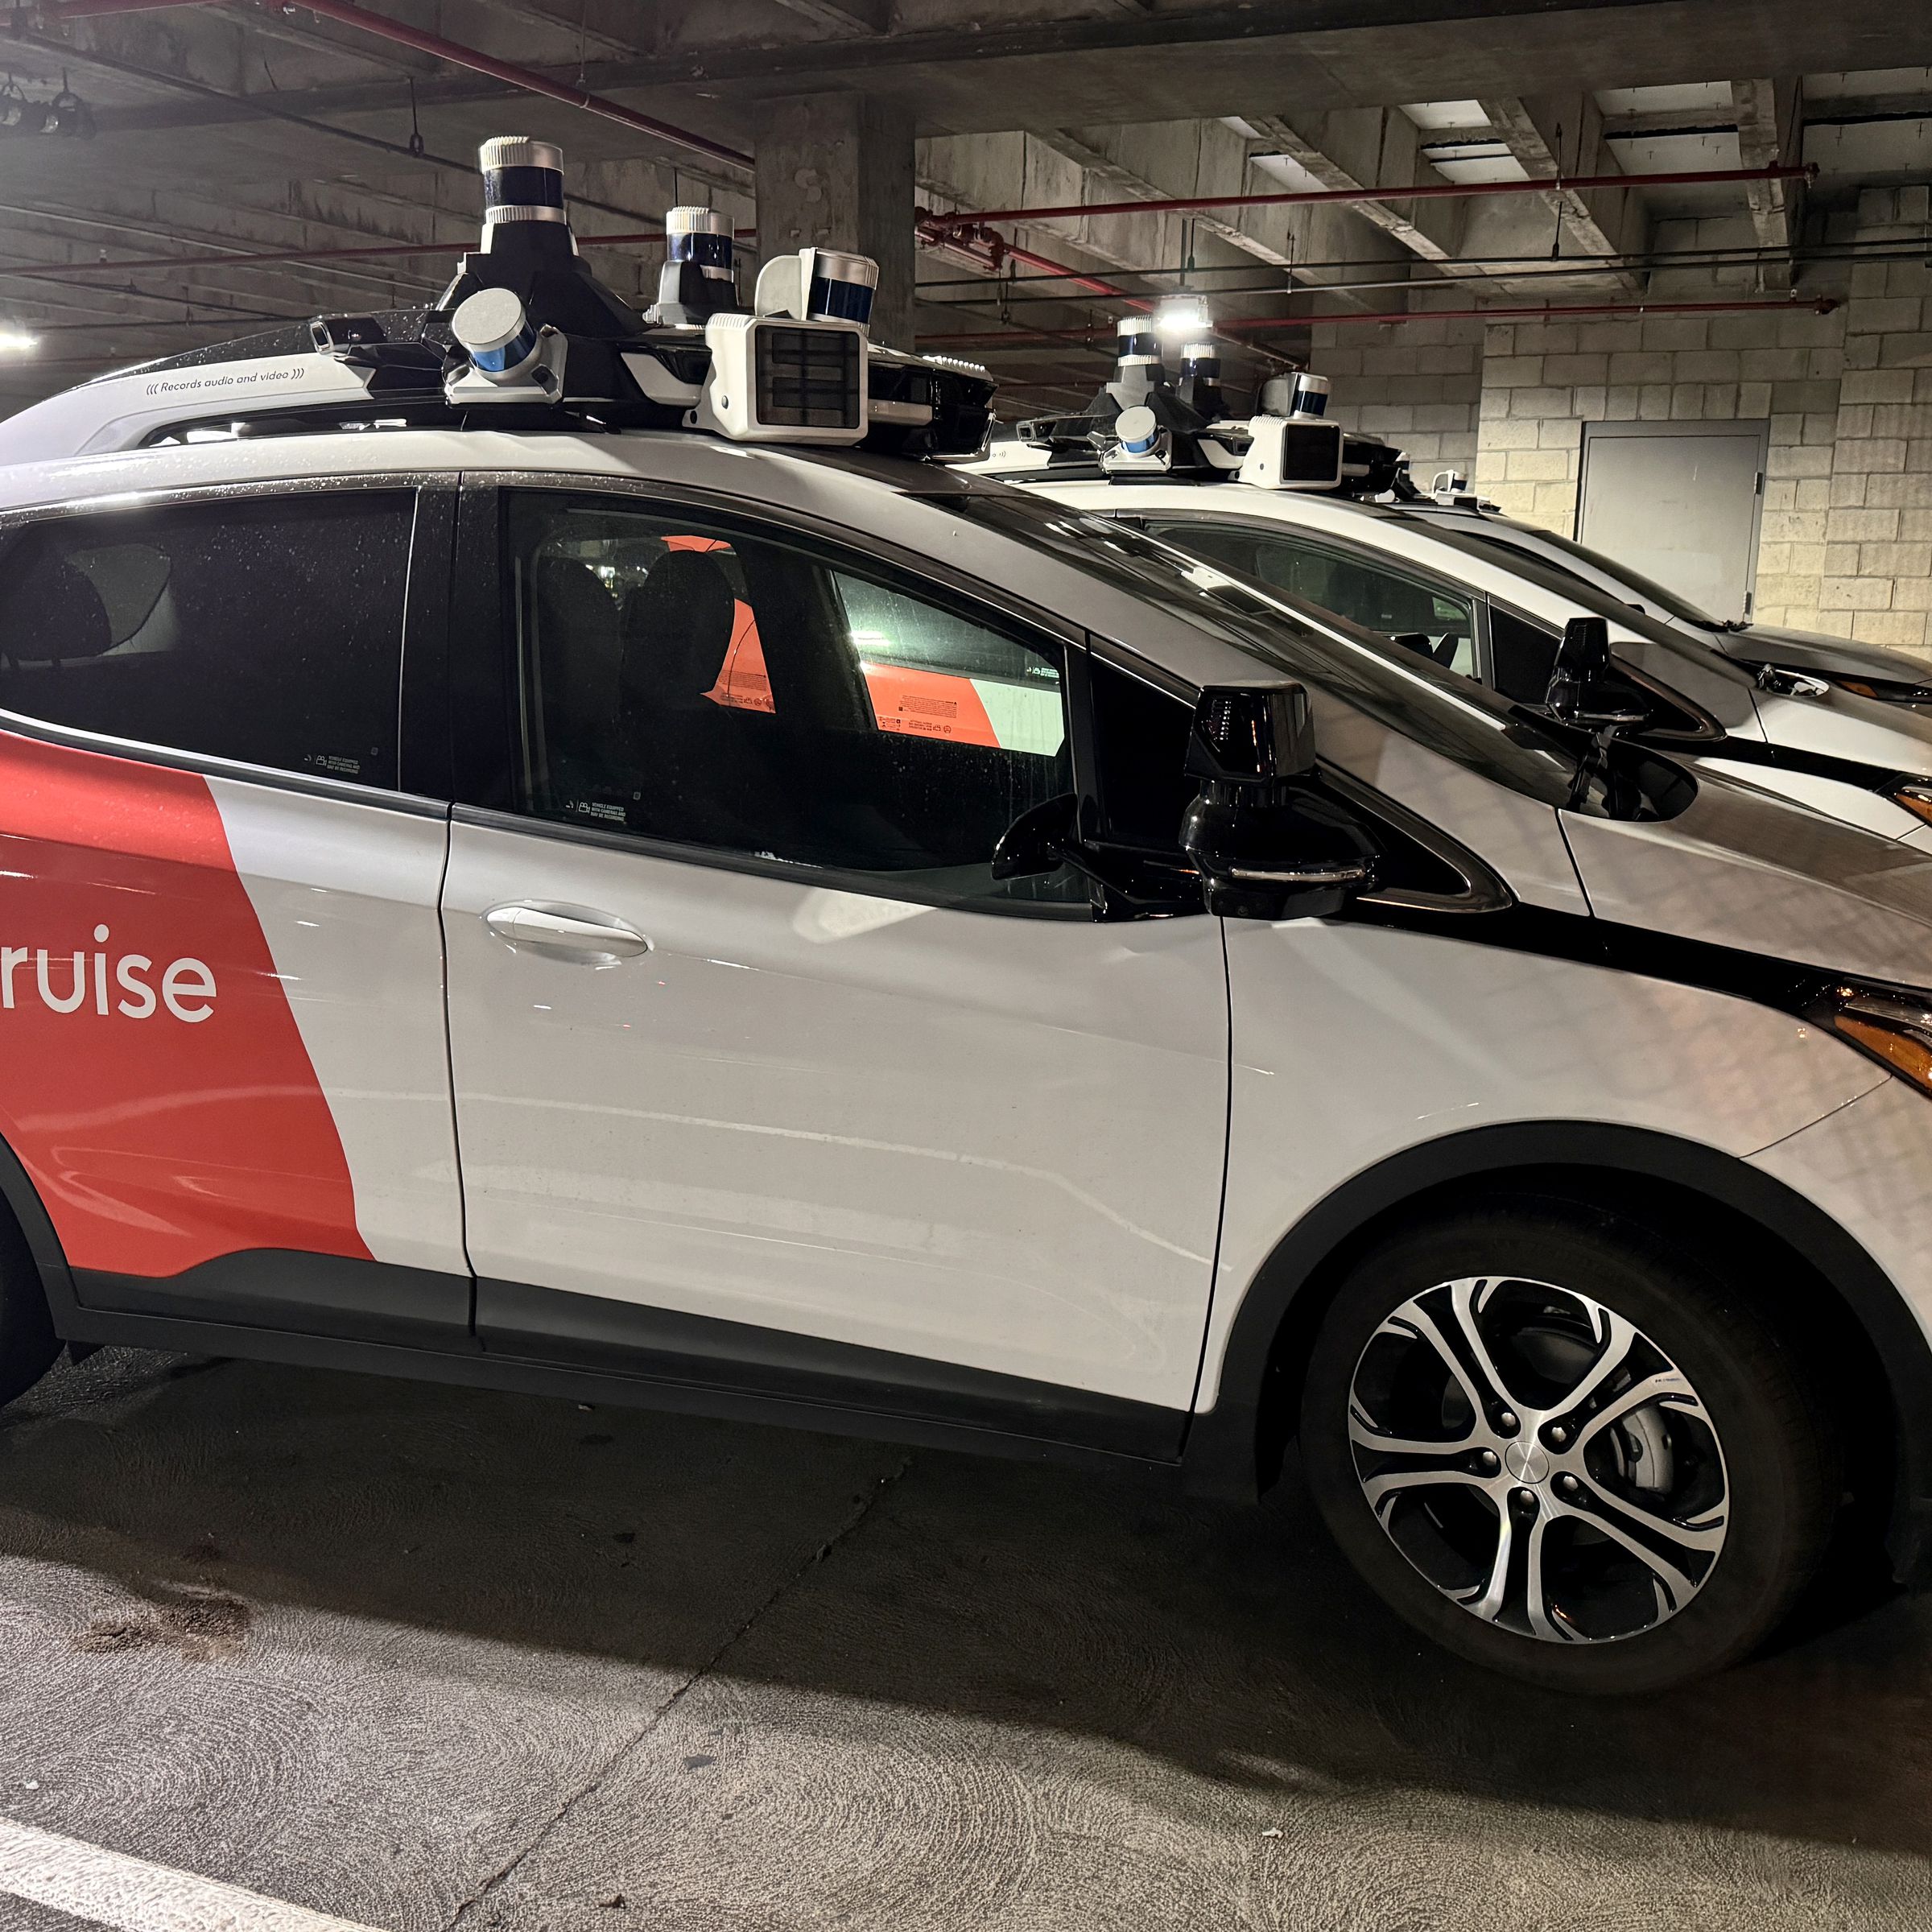 Cruise autonomous vehicles